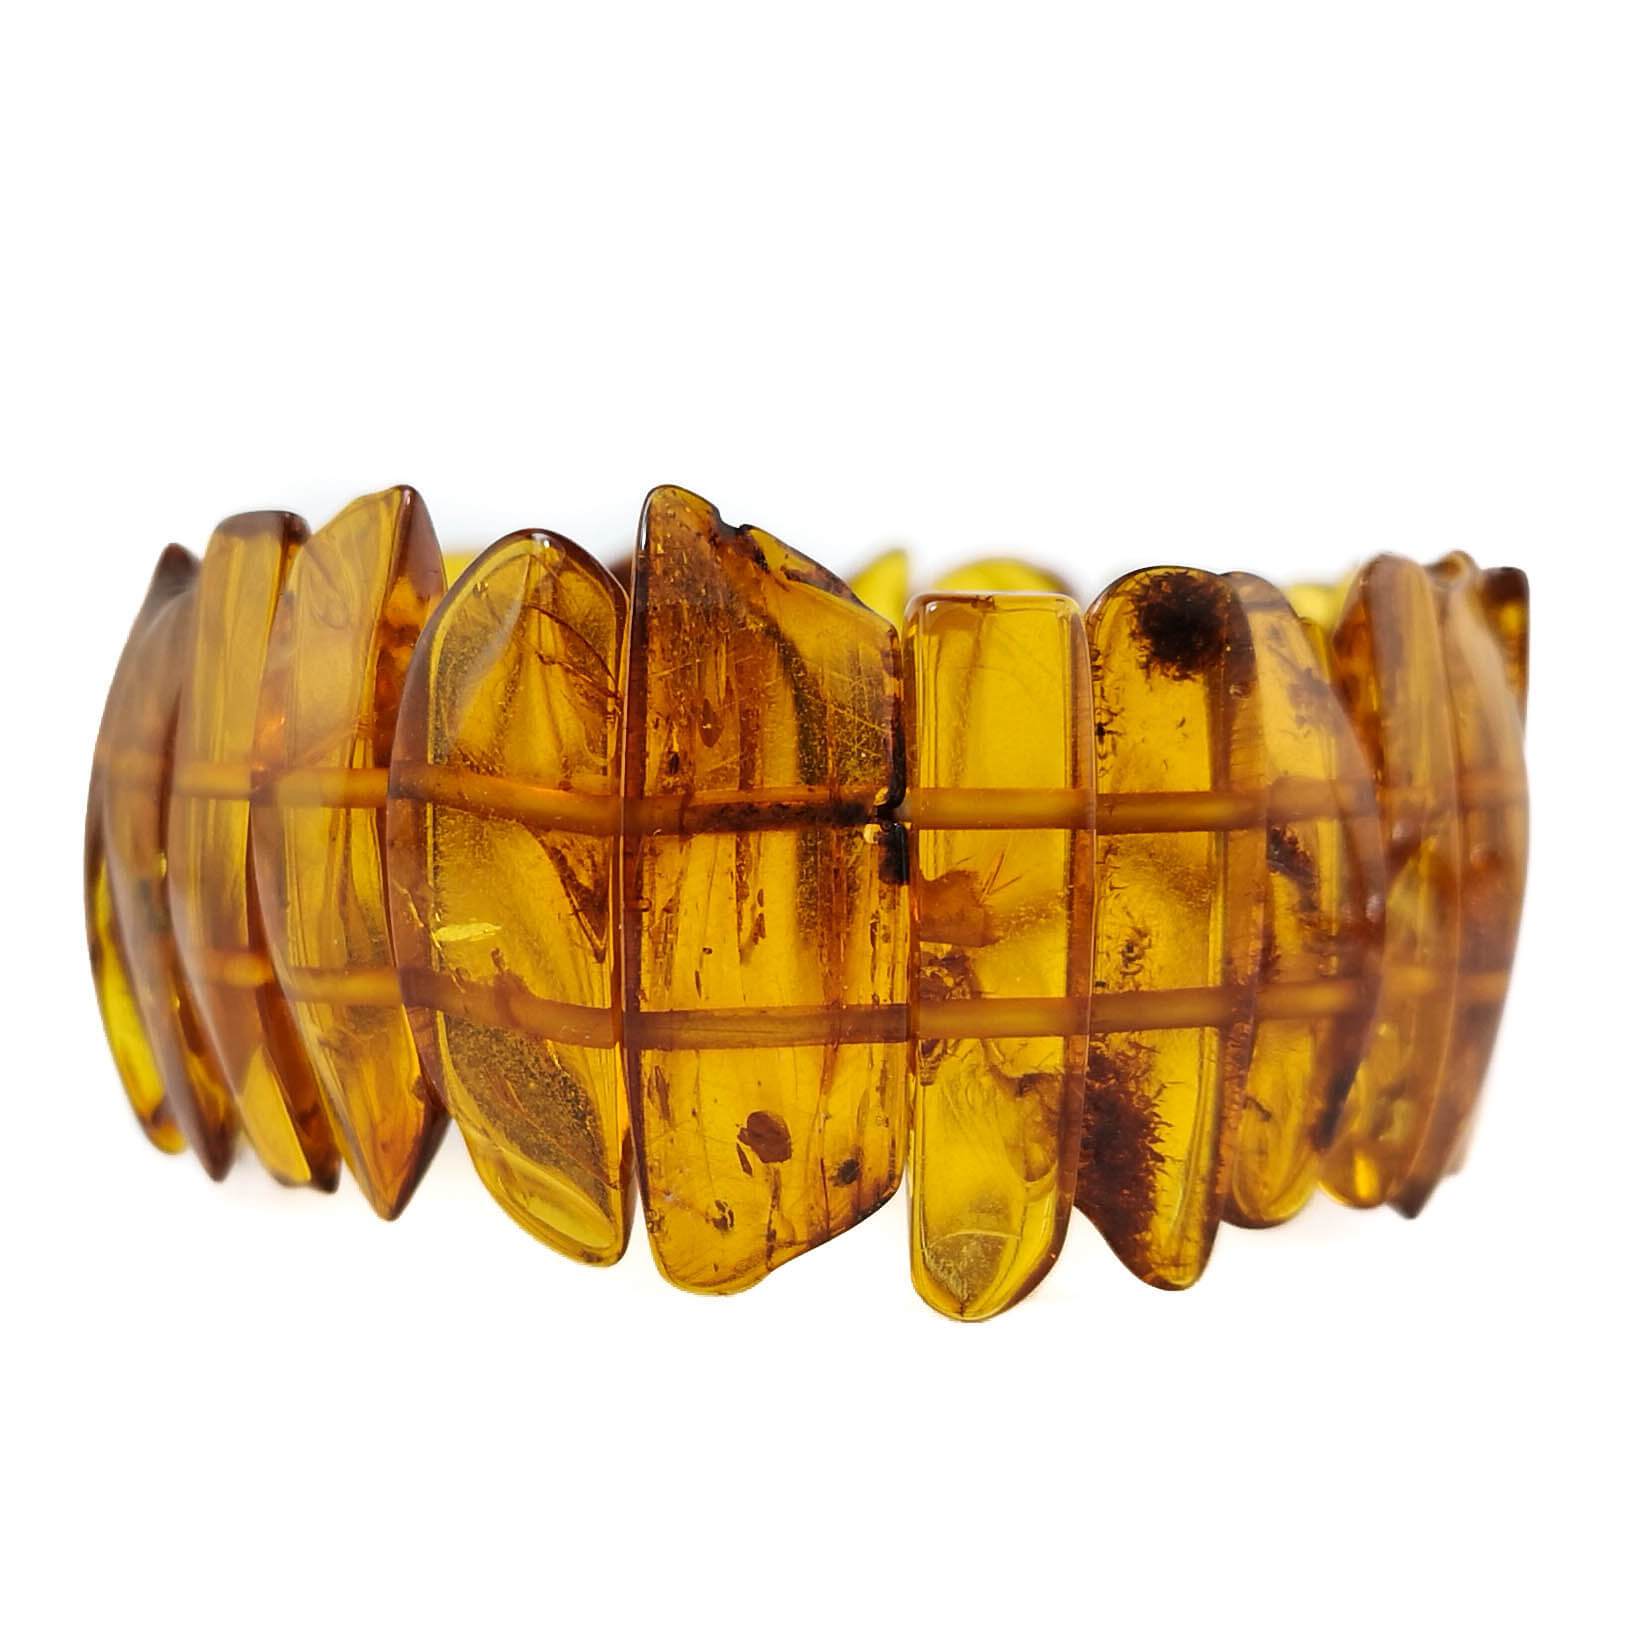 Honey amber bracelet "Golden honey"